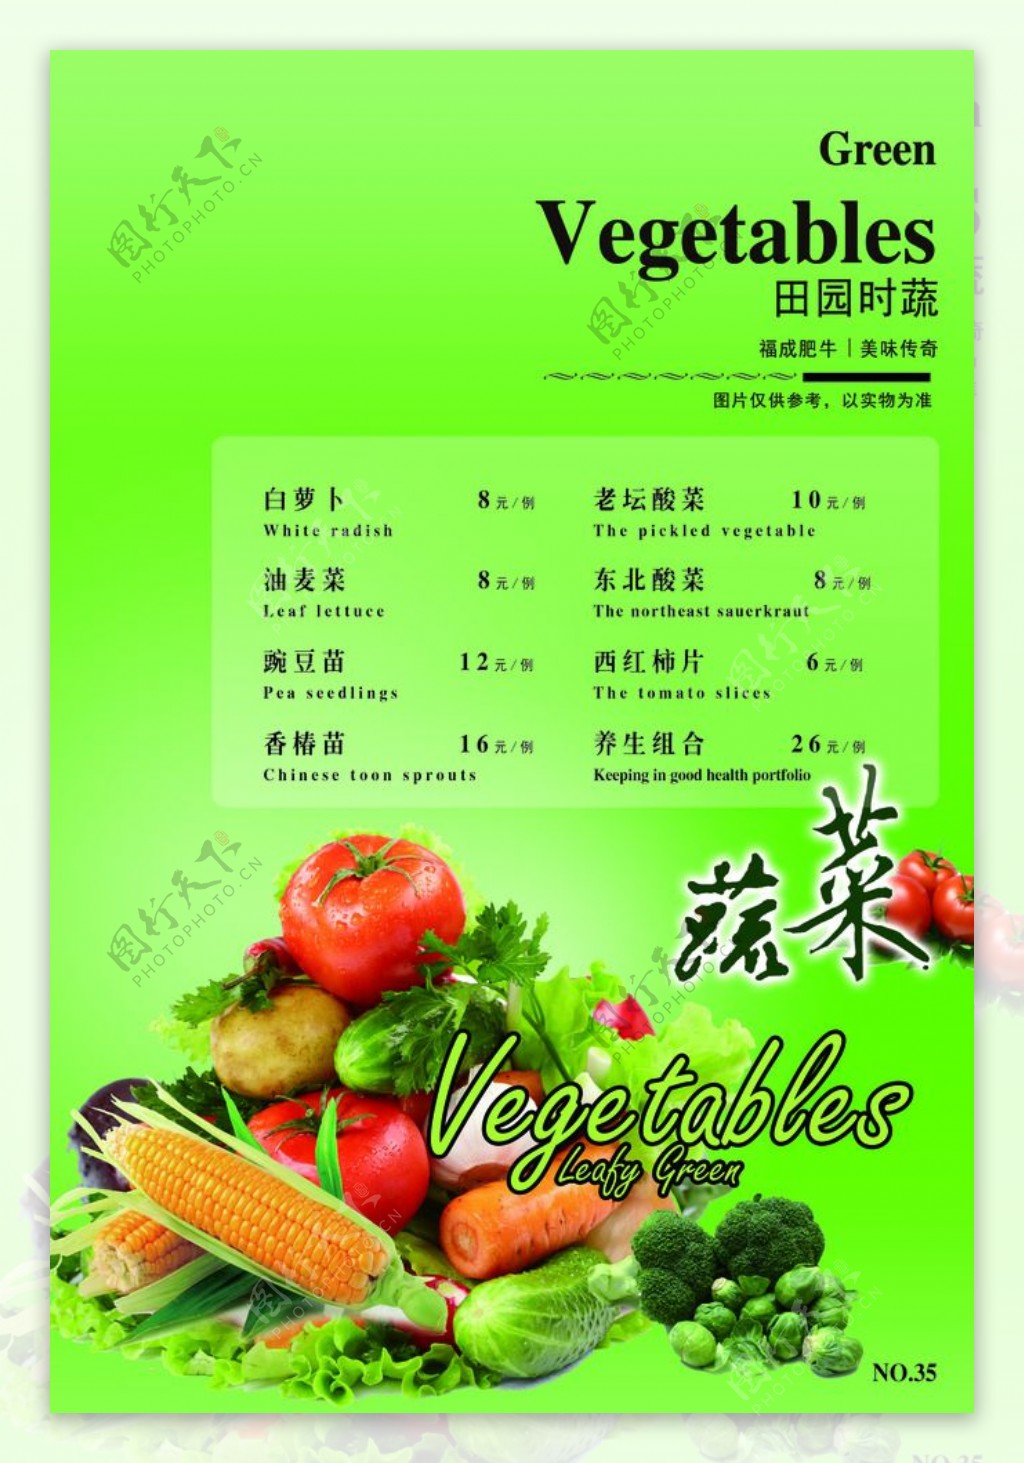 火锅菜谱蔬菜页图片